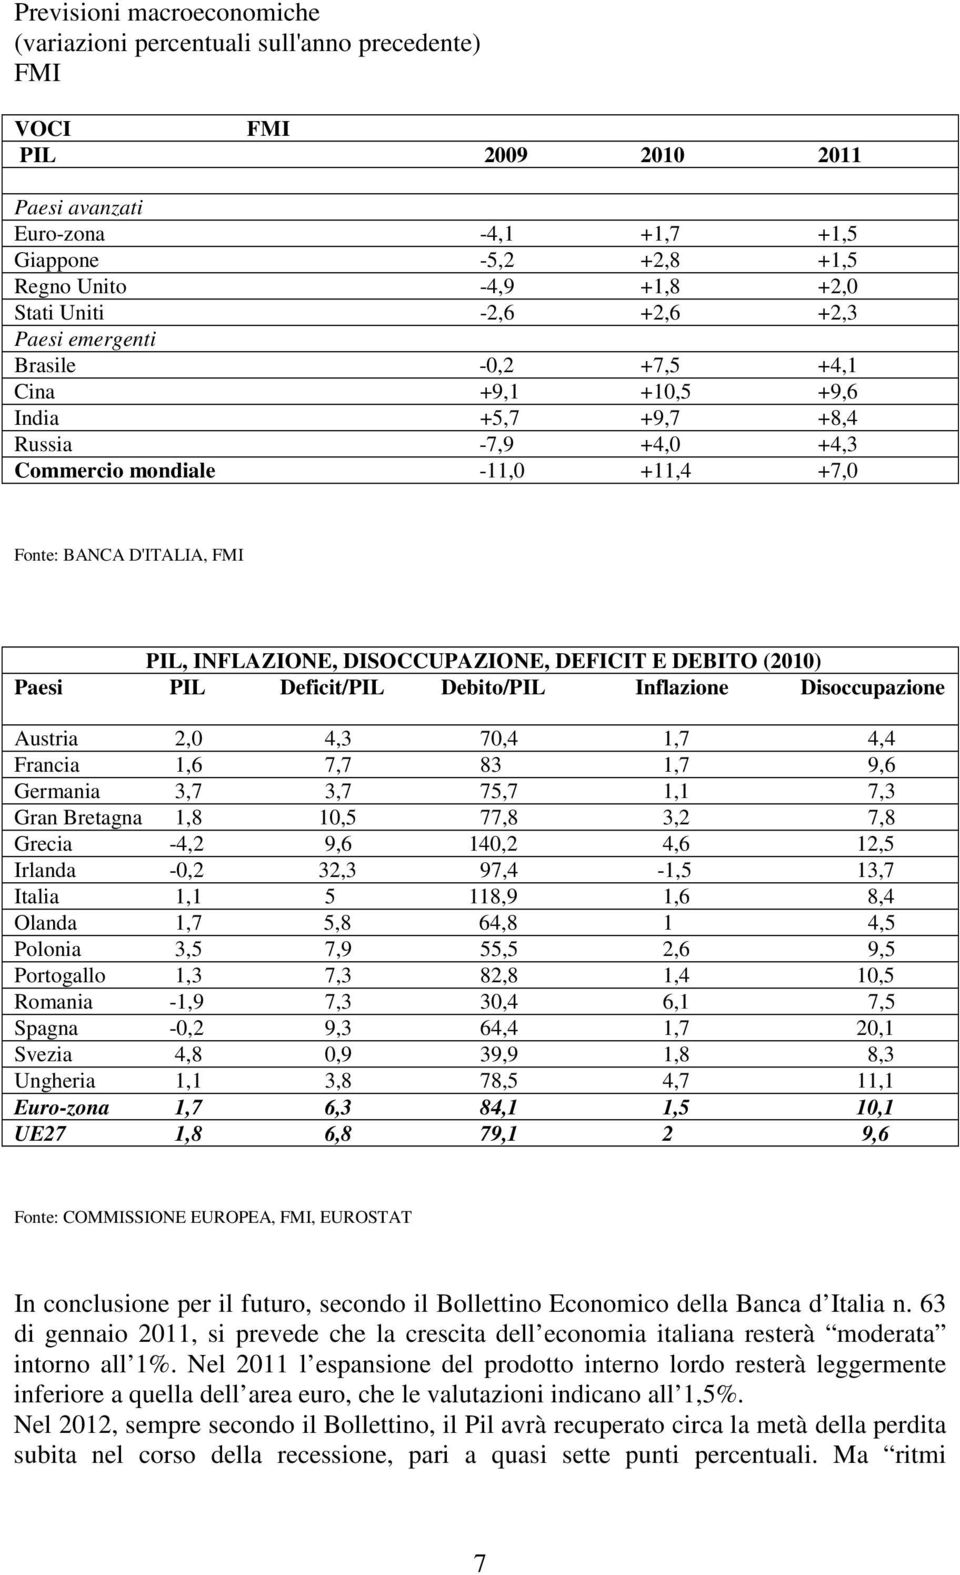 INFLAZIONE, DISOCCUPAZIONE, DEFICIT E DEBITO (2010) Paesi PIL Deficit/PIL Debito/PIL Inflazione Disoccupazione Austria 2,0 4,3 70,4 1,7 4,4 Francia 1,6 7,7 83 1,7 9,6 Germania 3,7 3,7 75,7 1,1 7,3